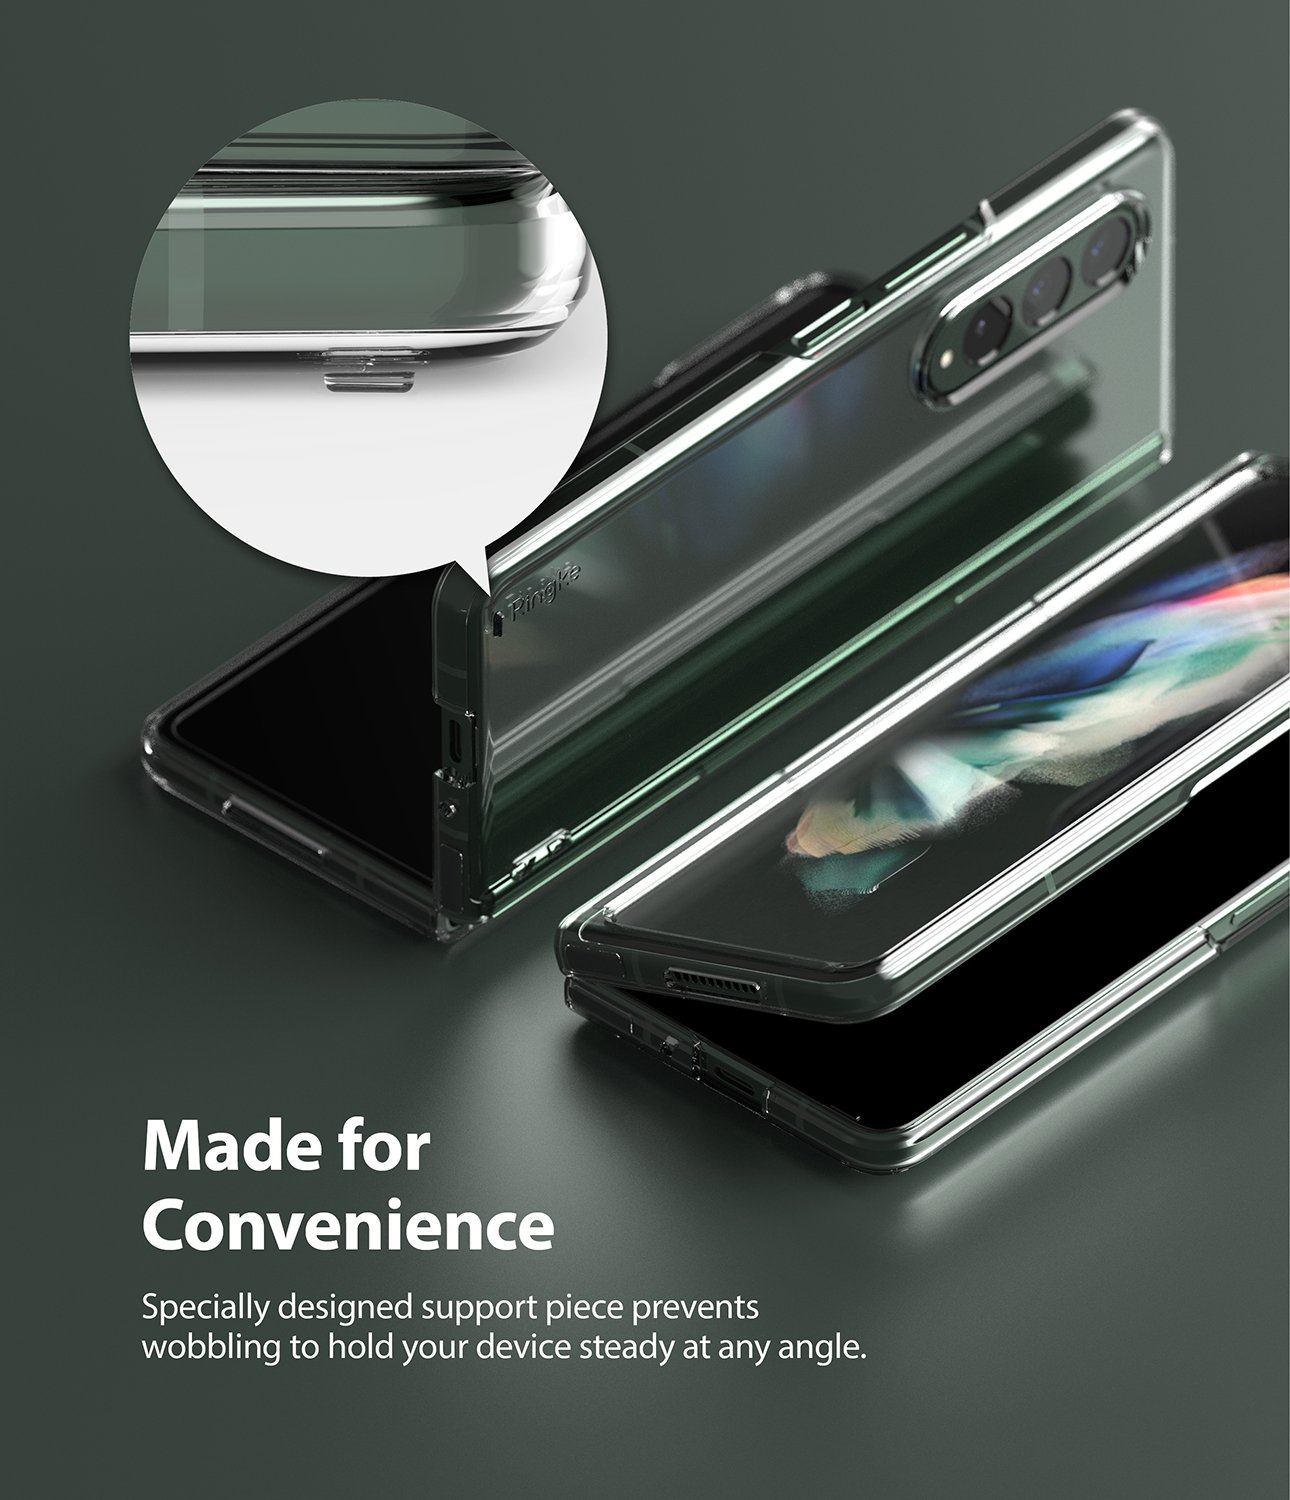 Samsung Galaxy Z Fold 3 Slim Case Clear